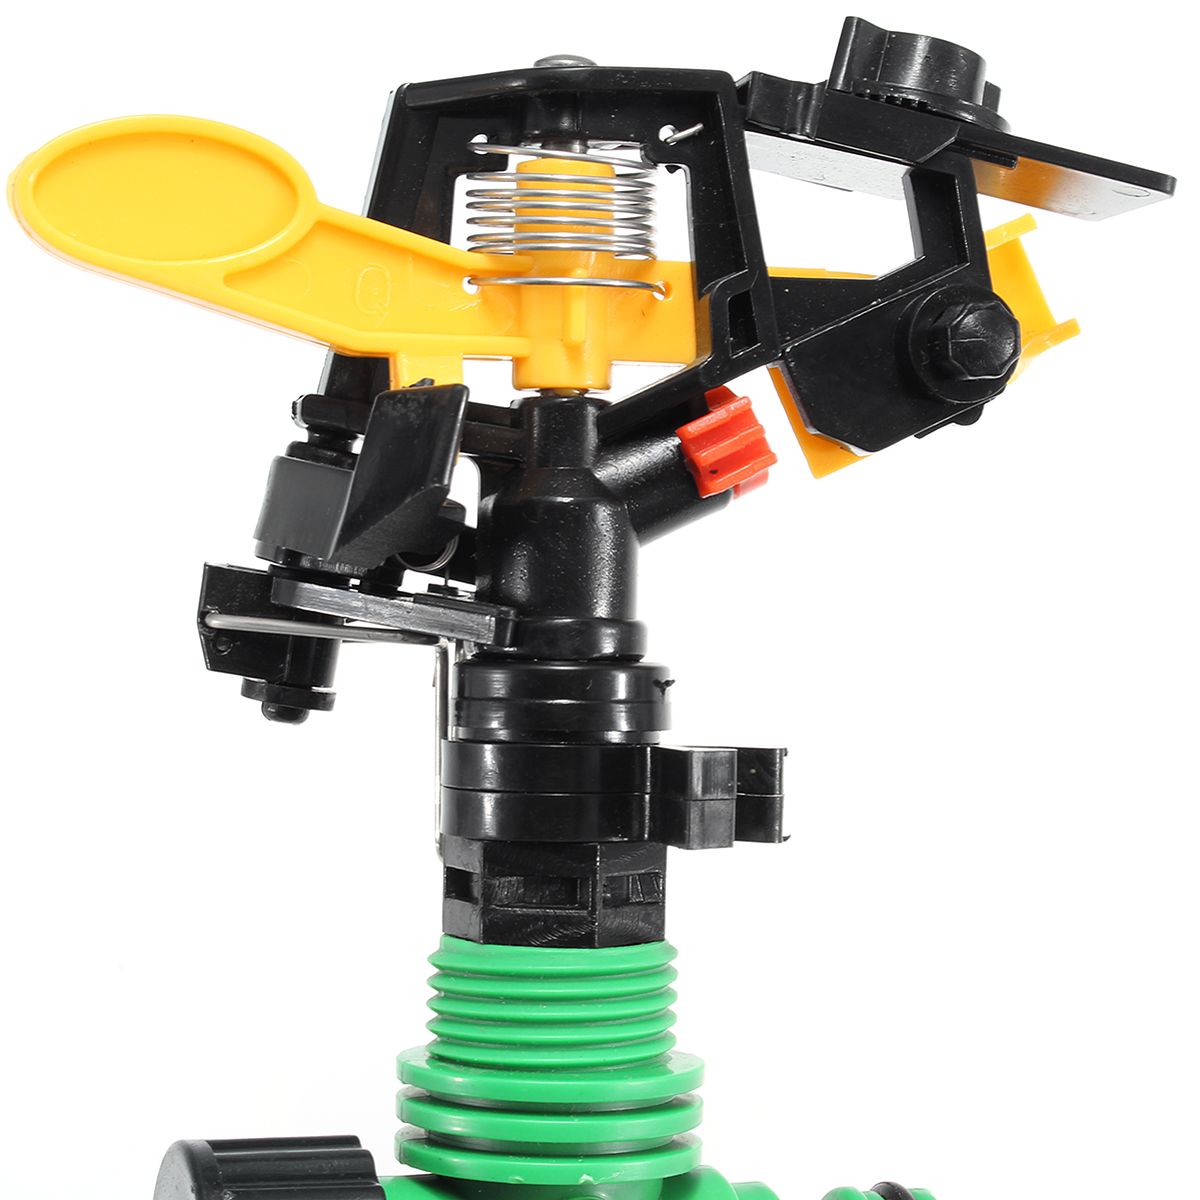 12-360deg-Rotary-Plastic-Irrigation-Sprayer-Sprinkler-For-Home-Garden-Yard-Lawn-1310247